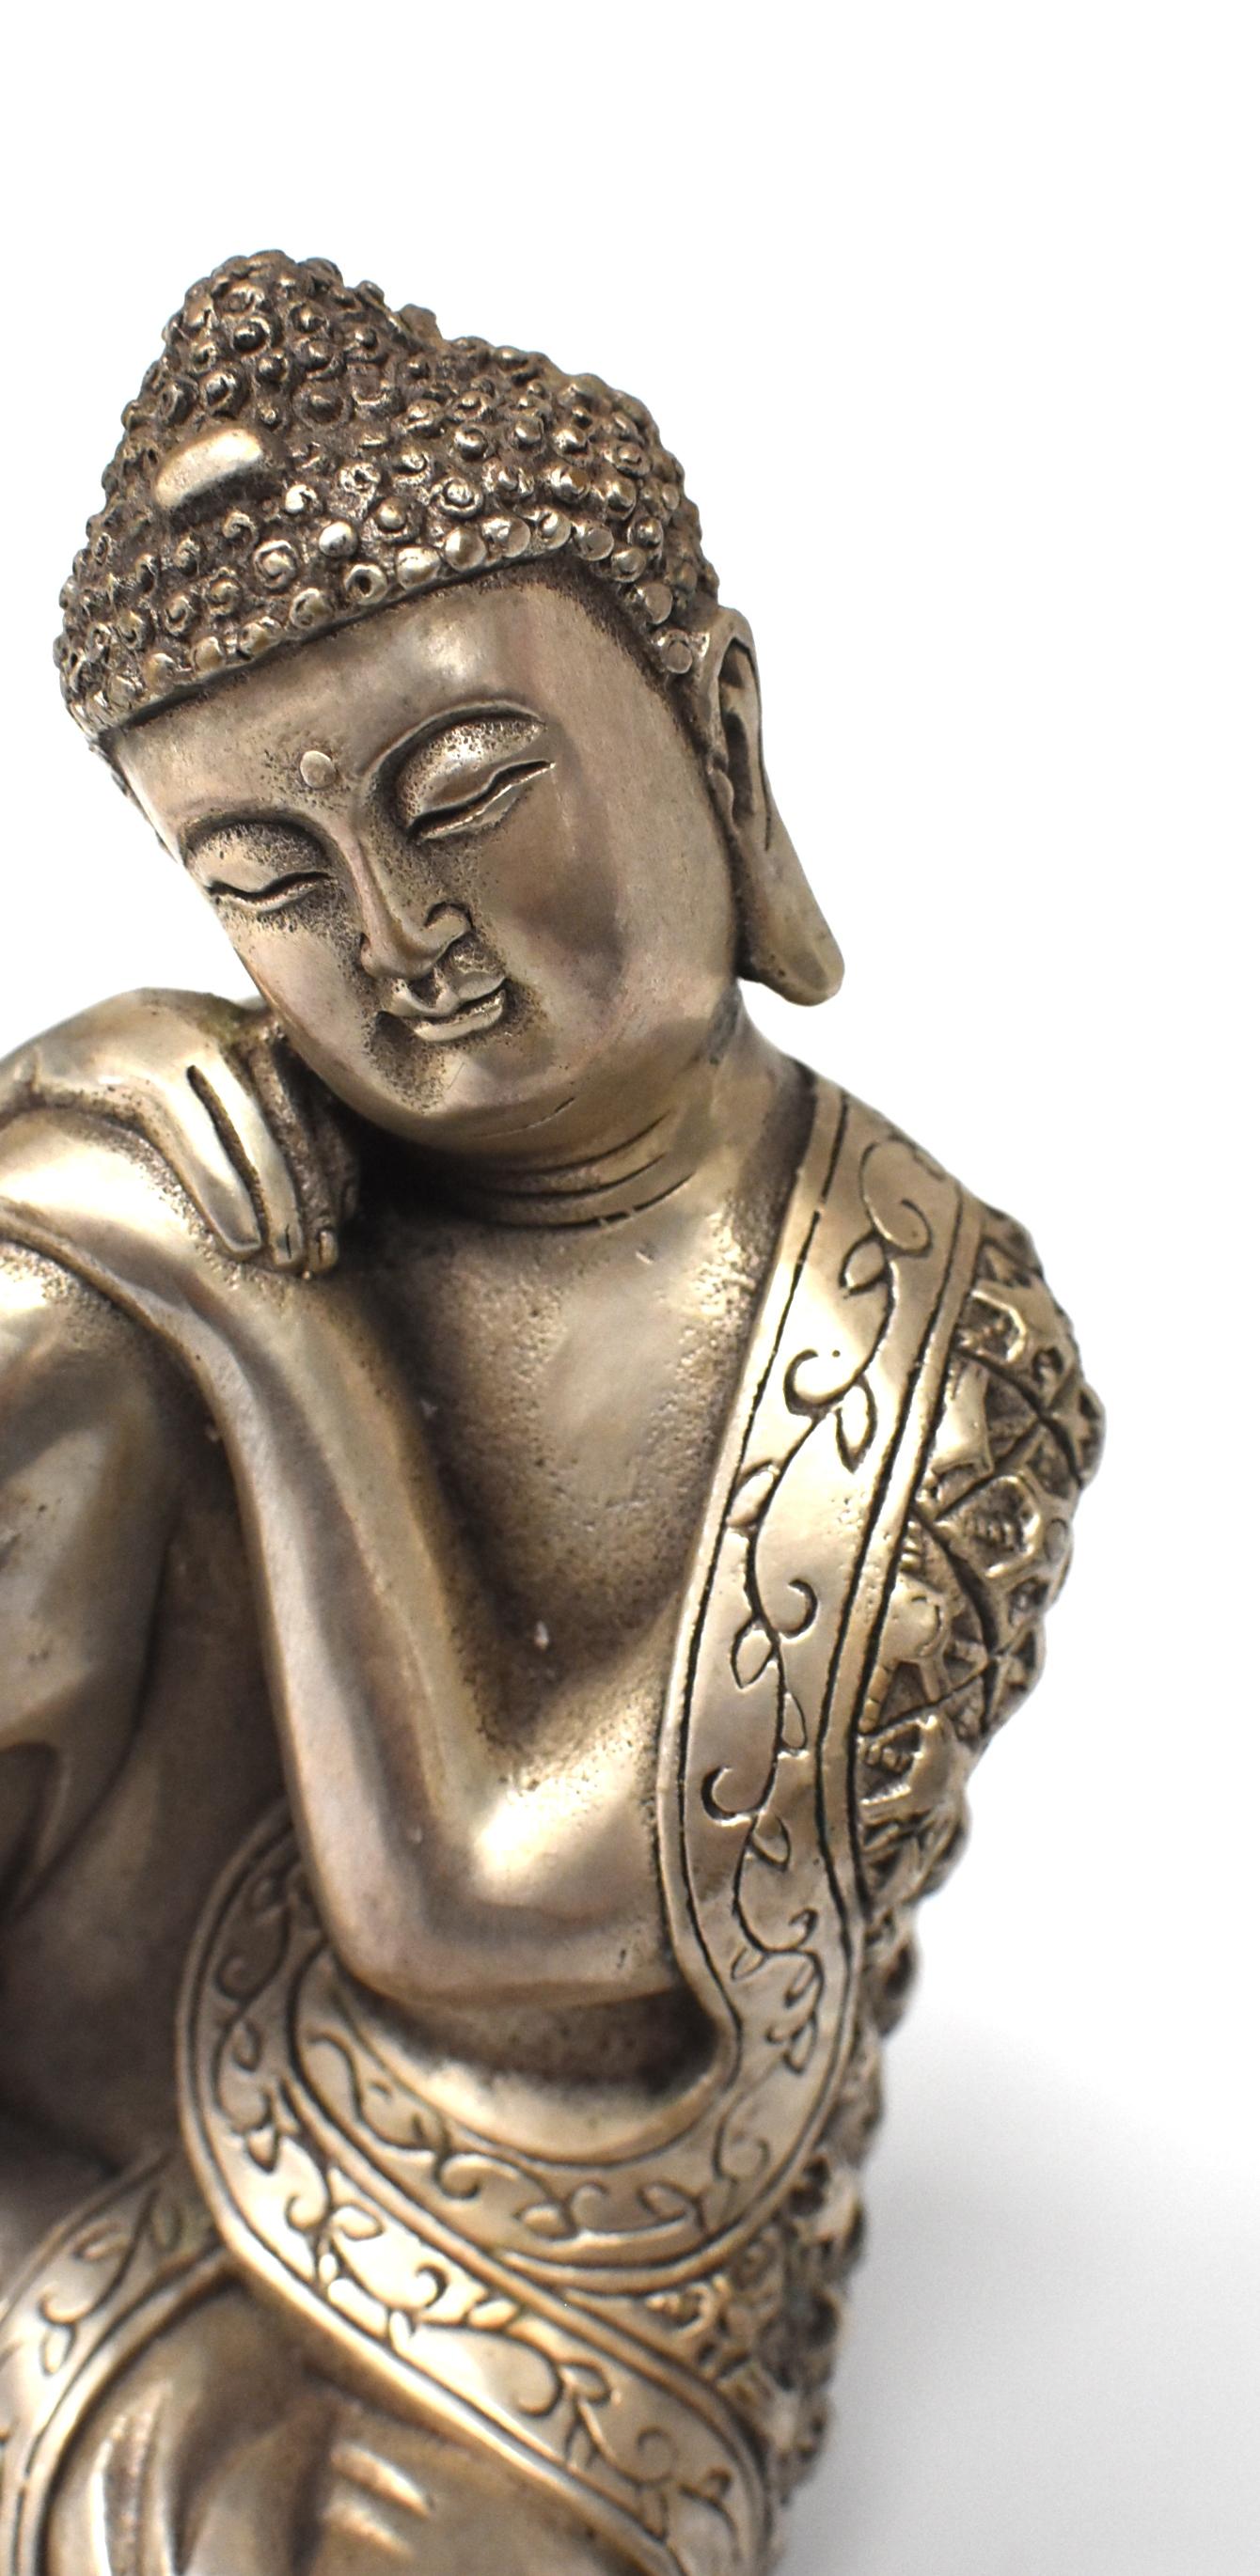 Silvered Brass Buddha Statue, a Thinking Buddha 11